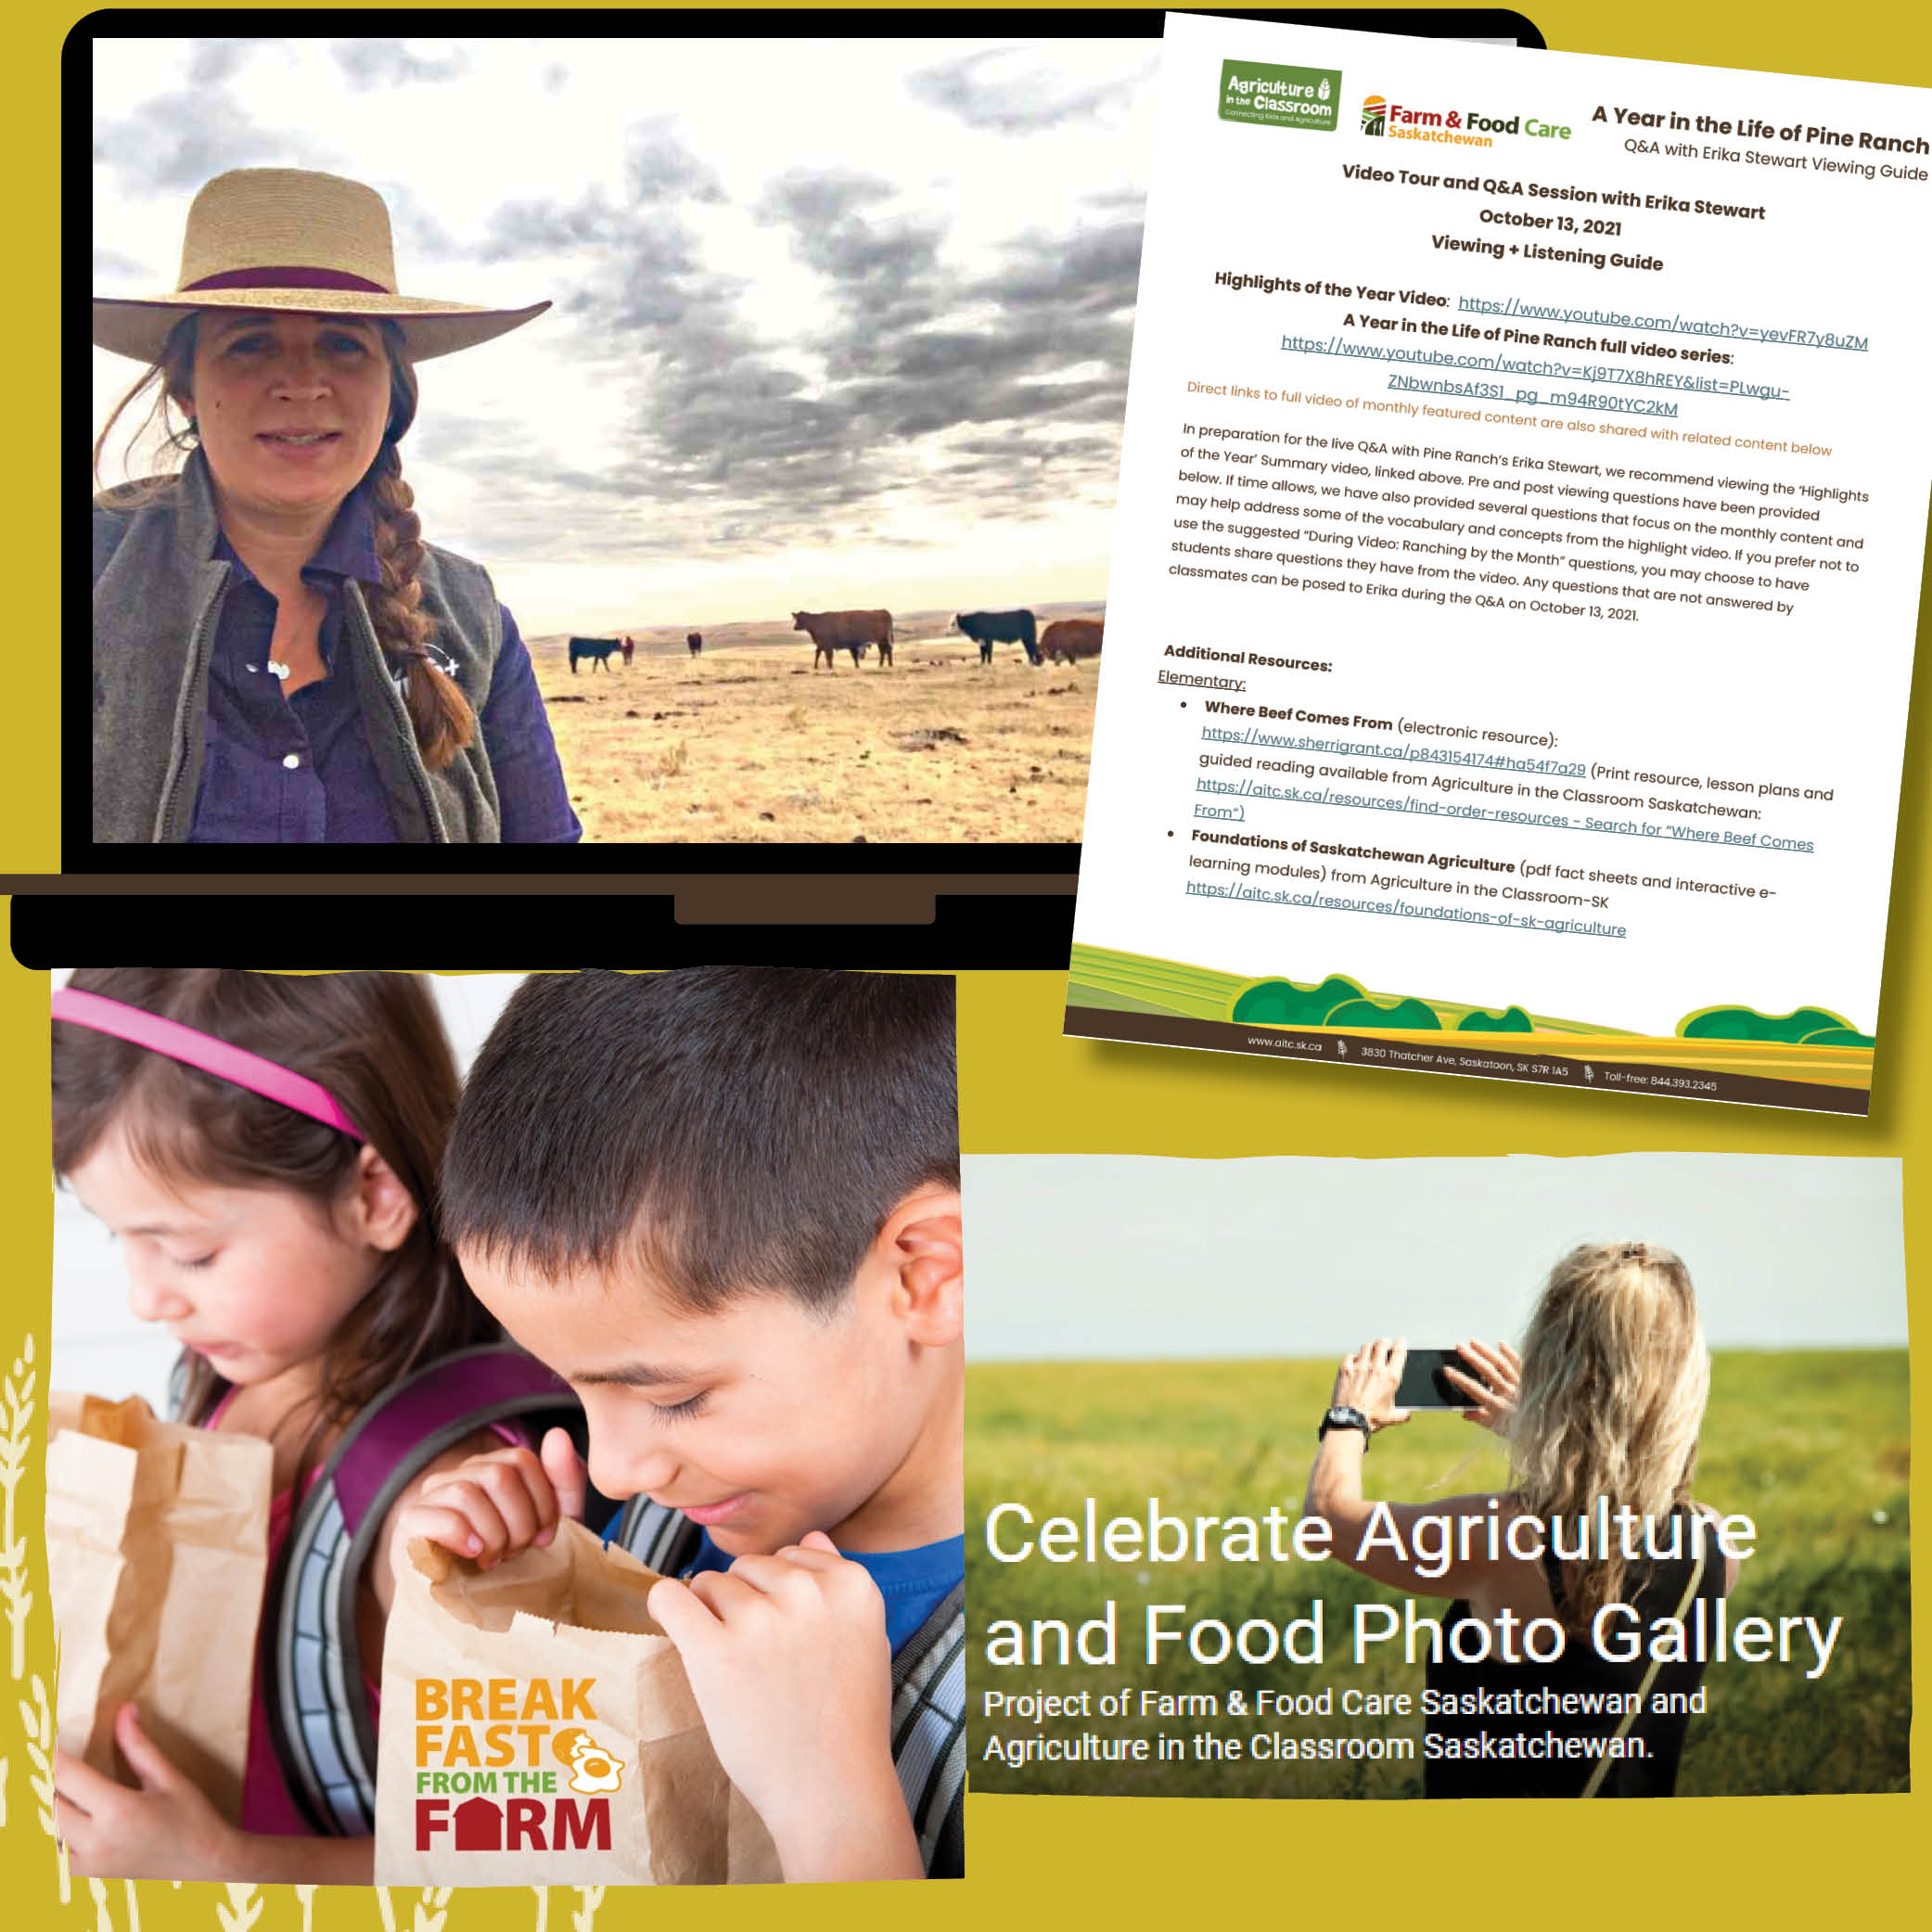 Farm & Food Care Saskatchewan Partnership